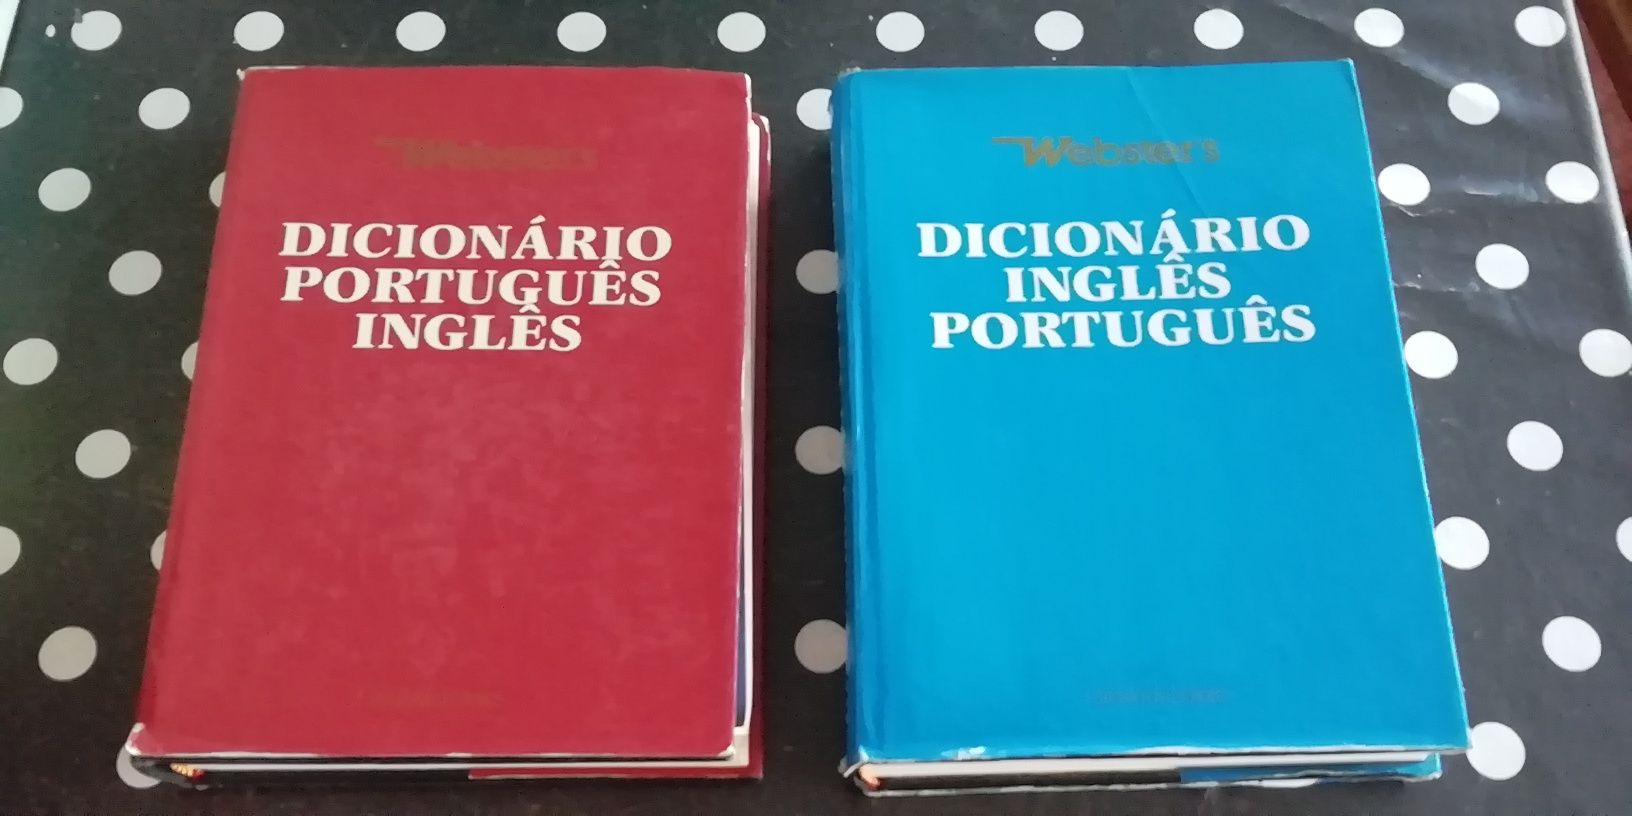 Dicionários português-inglês/inglês-português